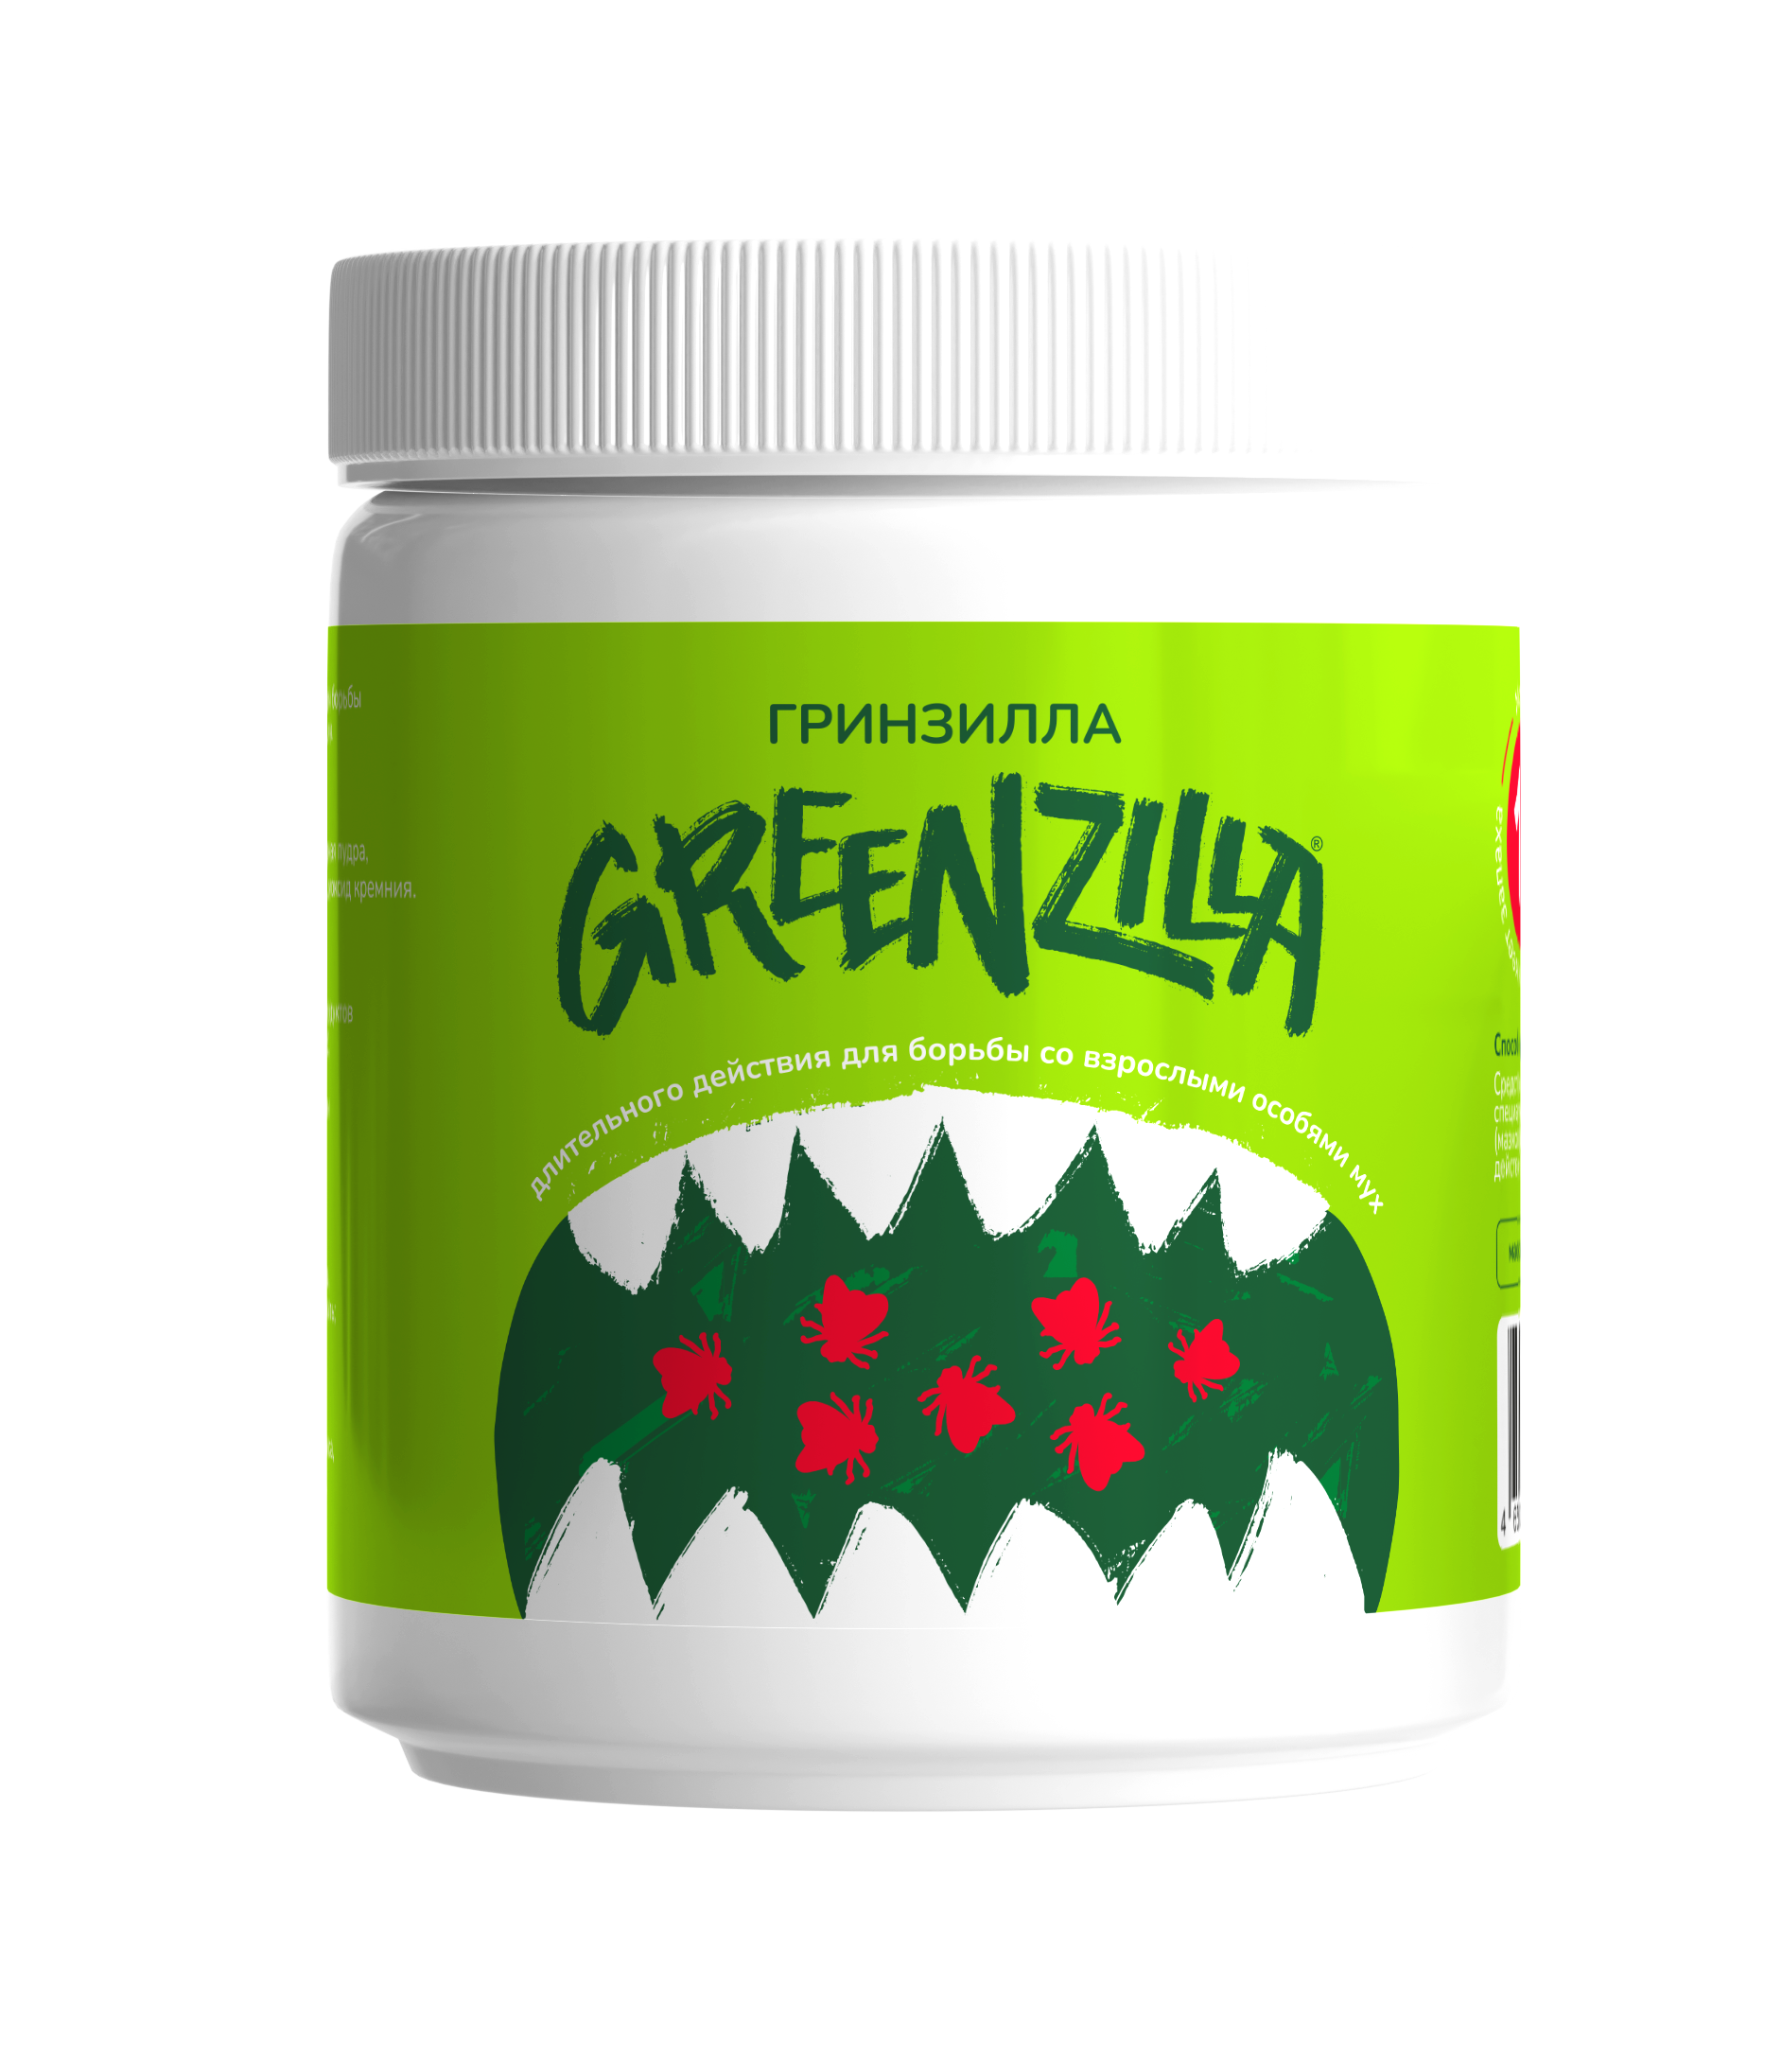 Гринзилла Greenzilla длительного действия для борьбы со взрослыми особями мух 1%  500 гр